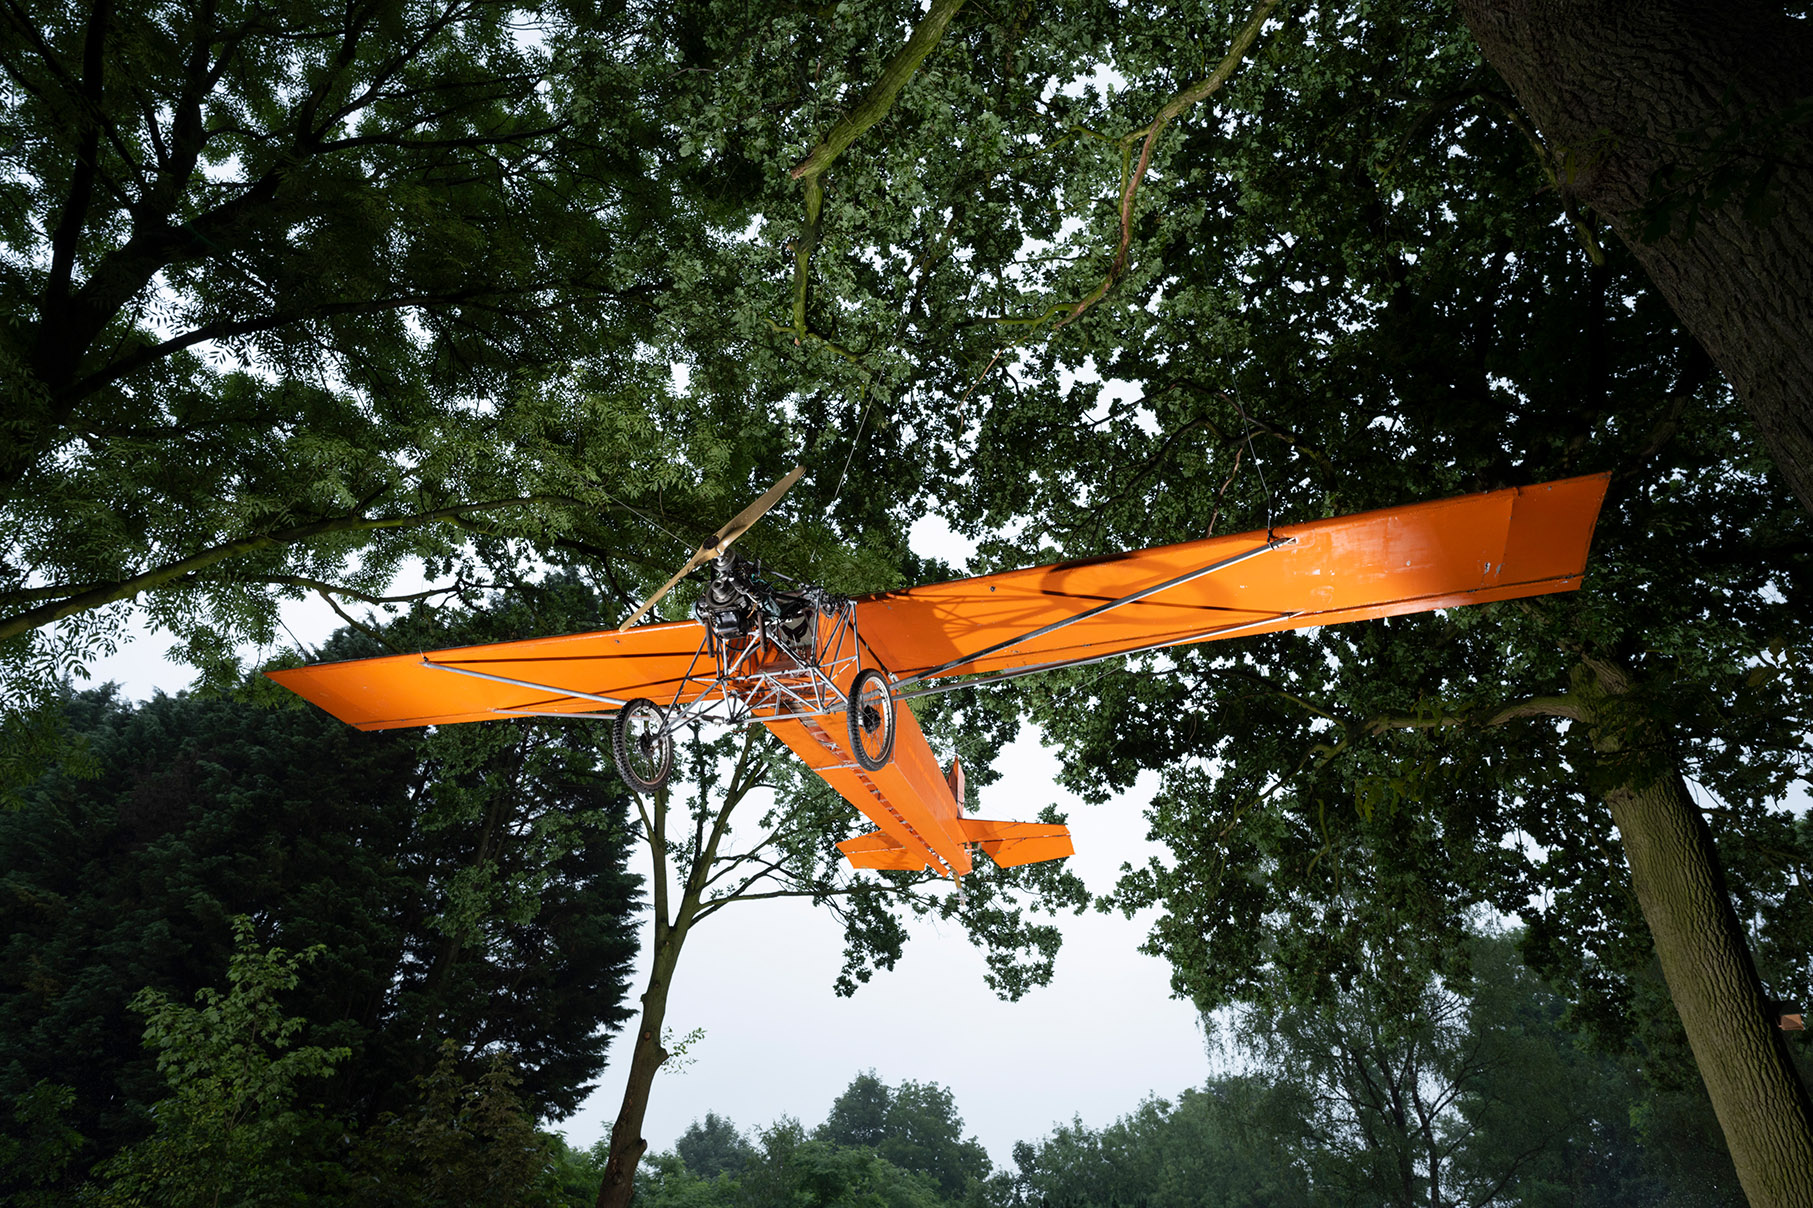 vliegtuig hangt tussen de bomen